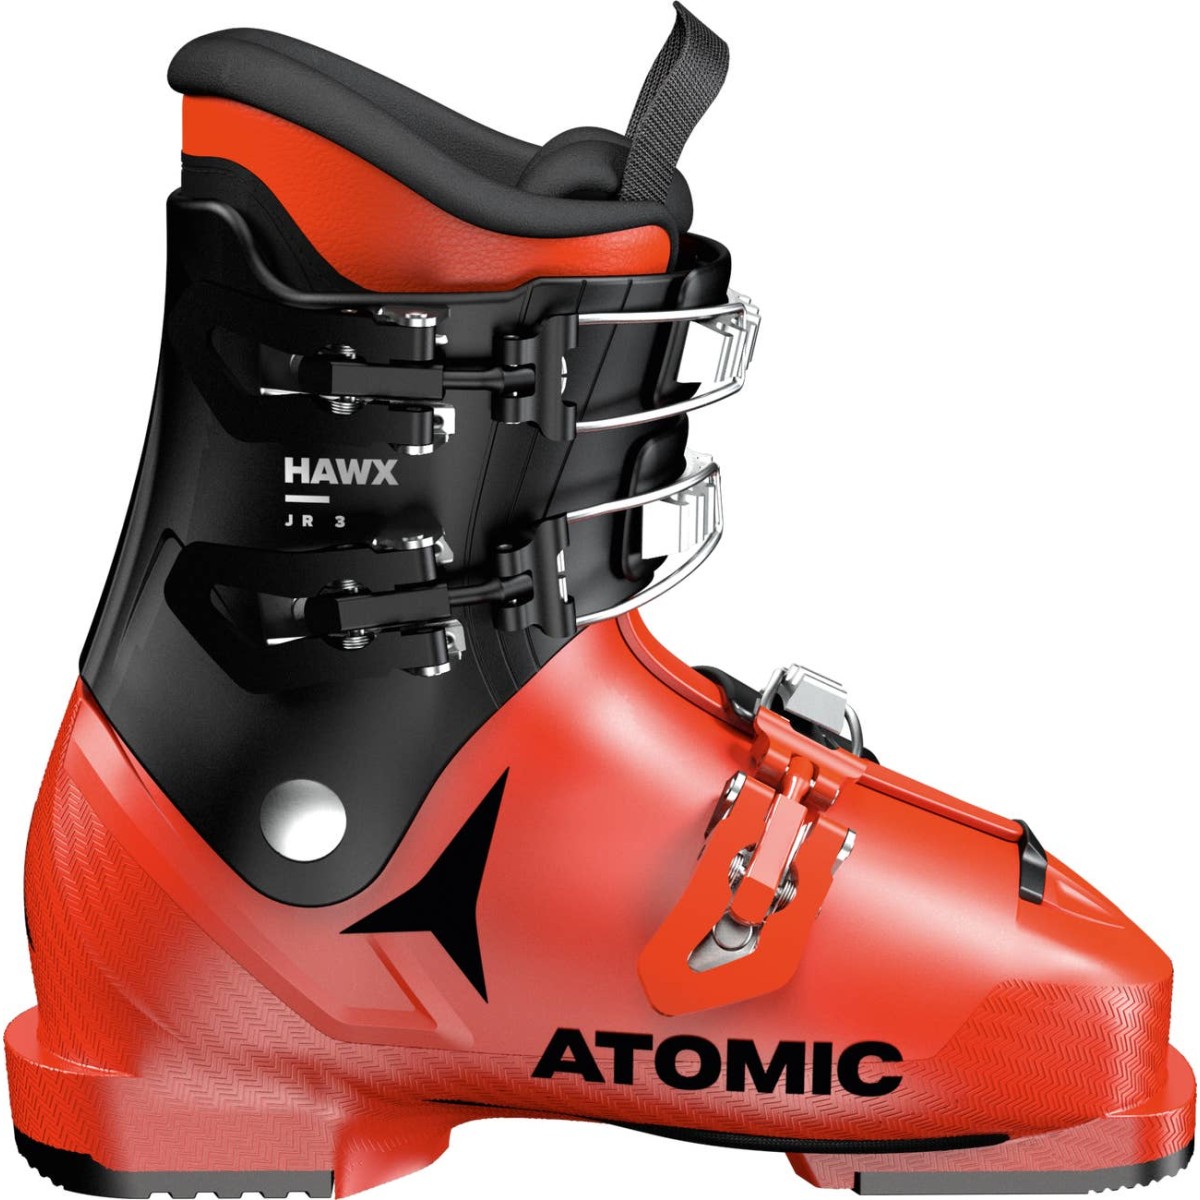 ATOMIC HAWX JR 3 alpine ski boots - red/black